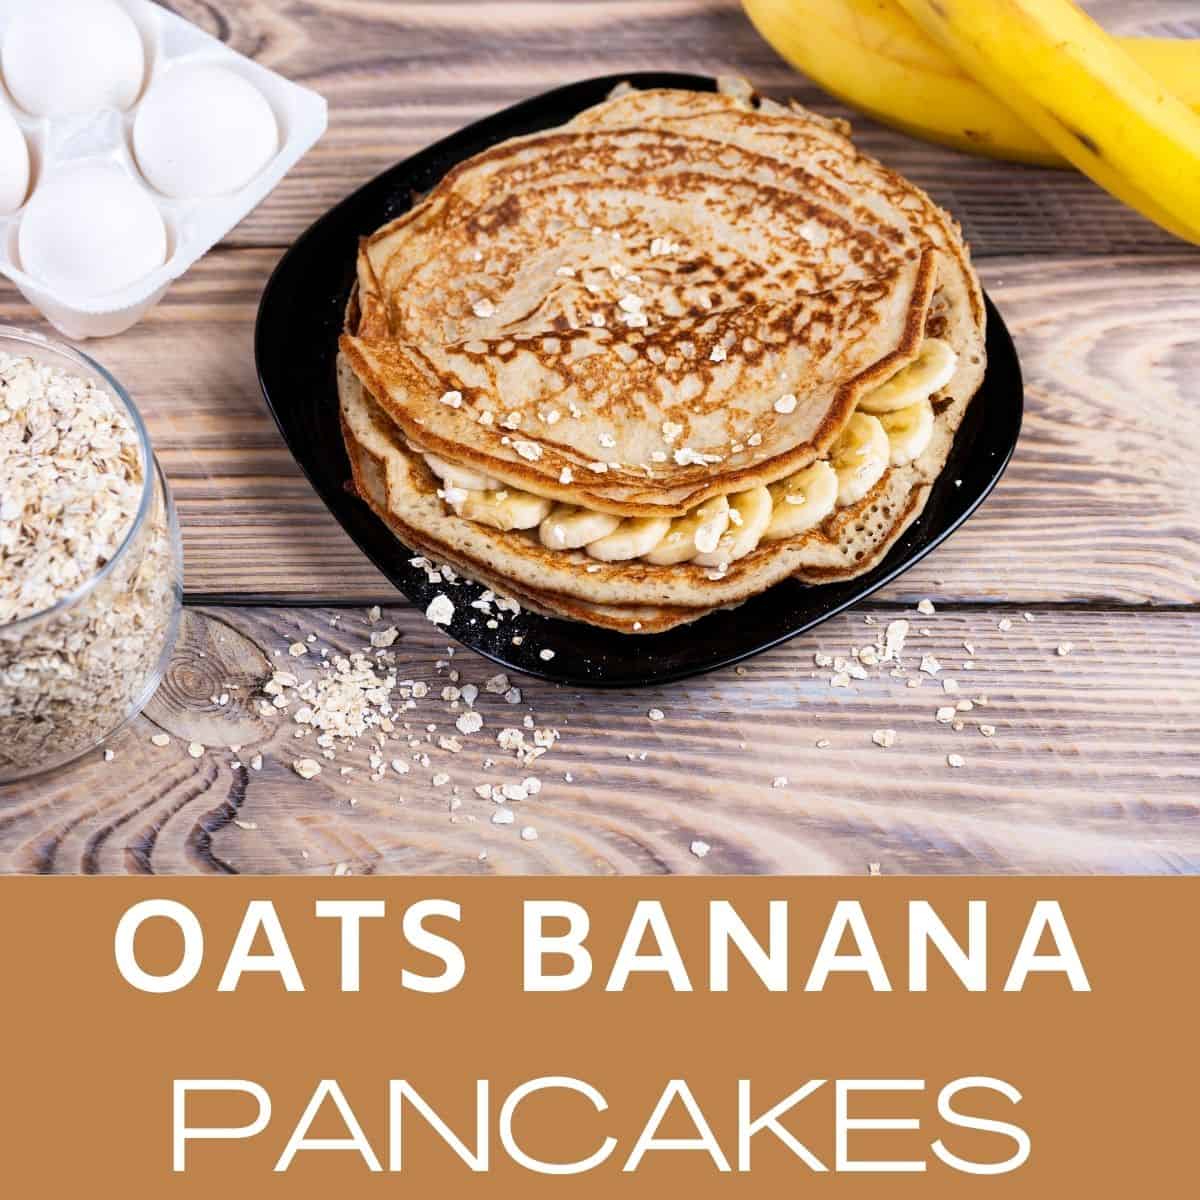 oats banana healthy pancakes